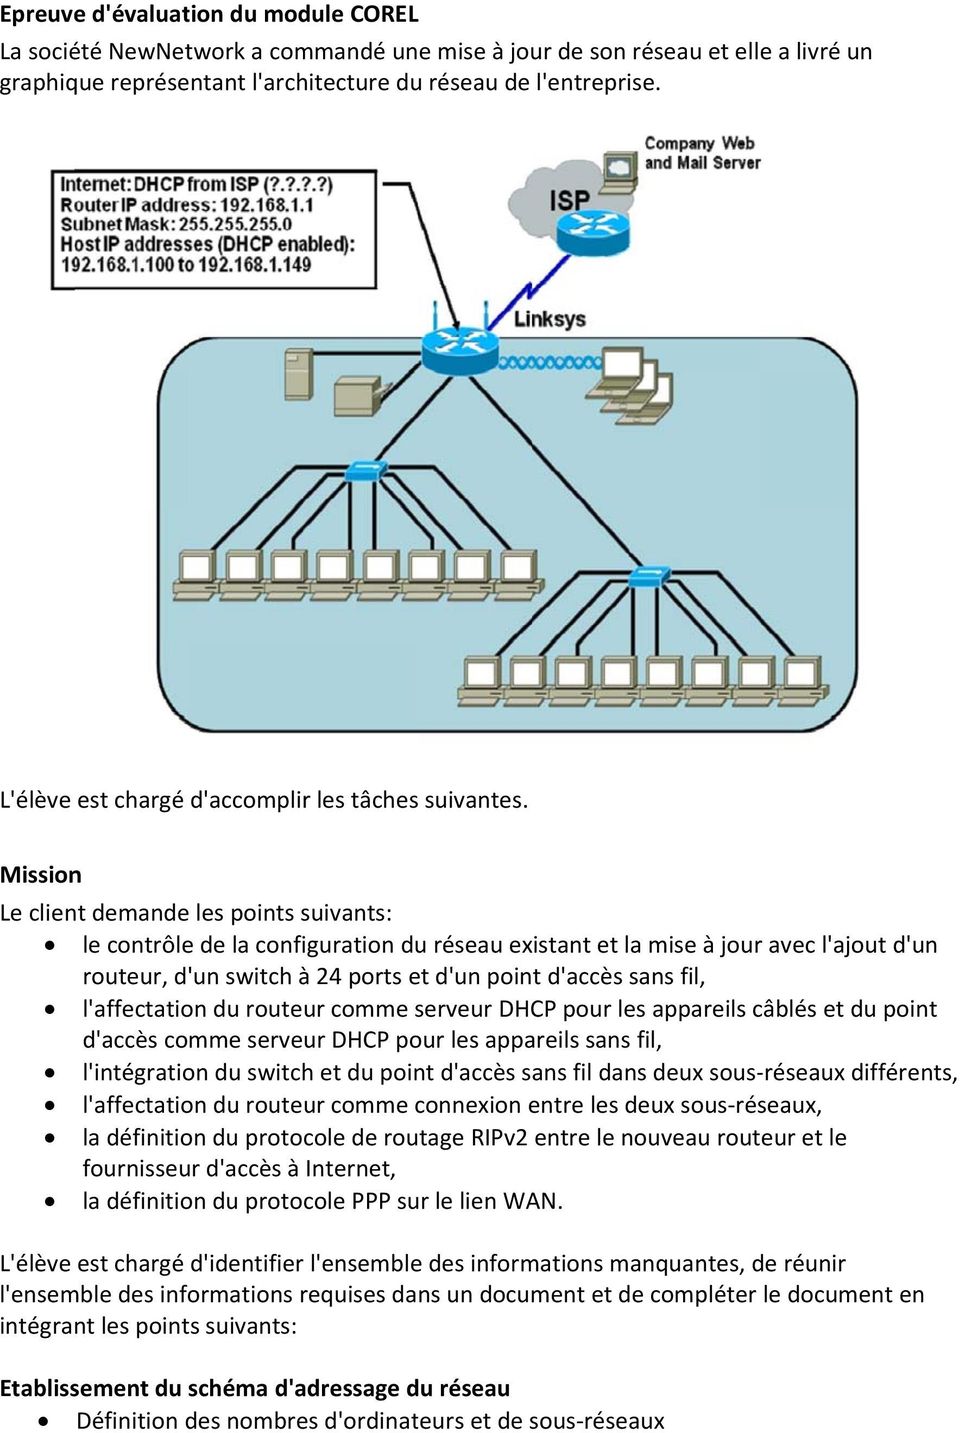 Mission Le client demande les points suivants: le contrôle de la configuration du réseau existant et la mise à jour avec l'ajout d'un routeur, d' 'un switch à 24 ports et d'un point d'accès sans fil,